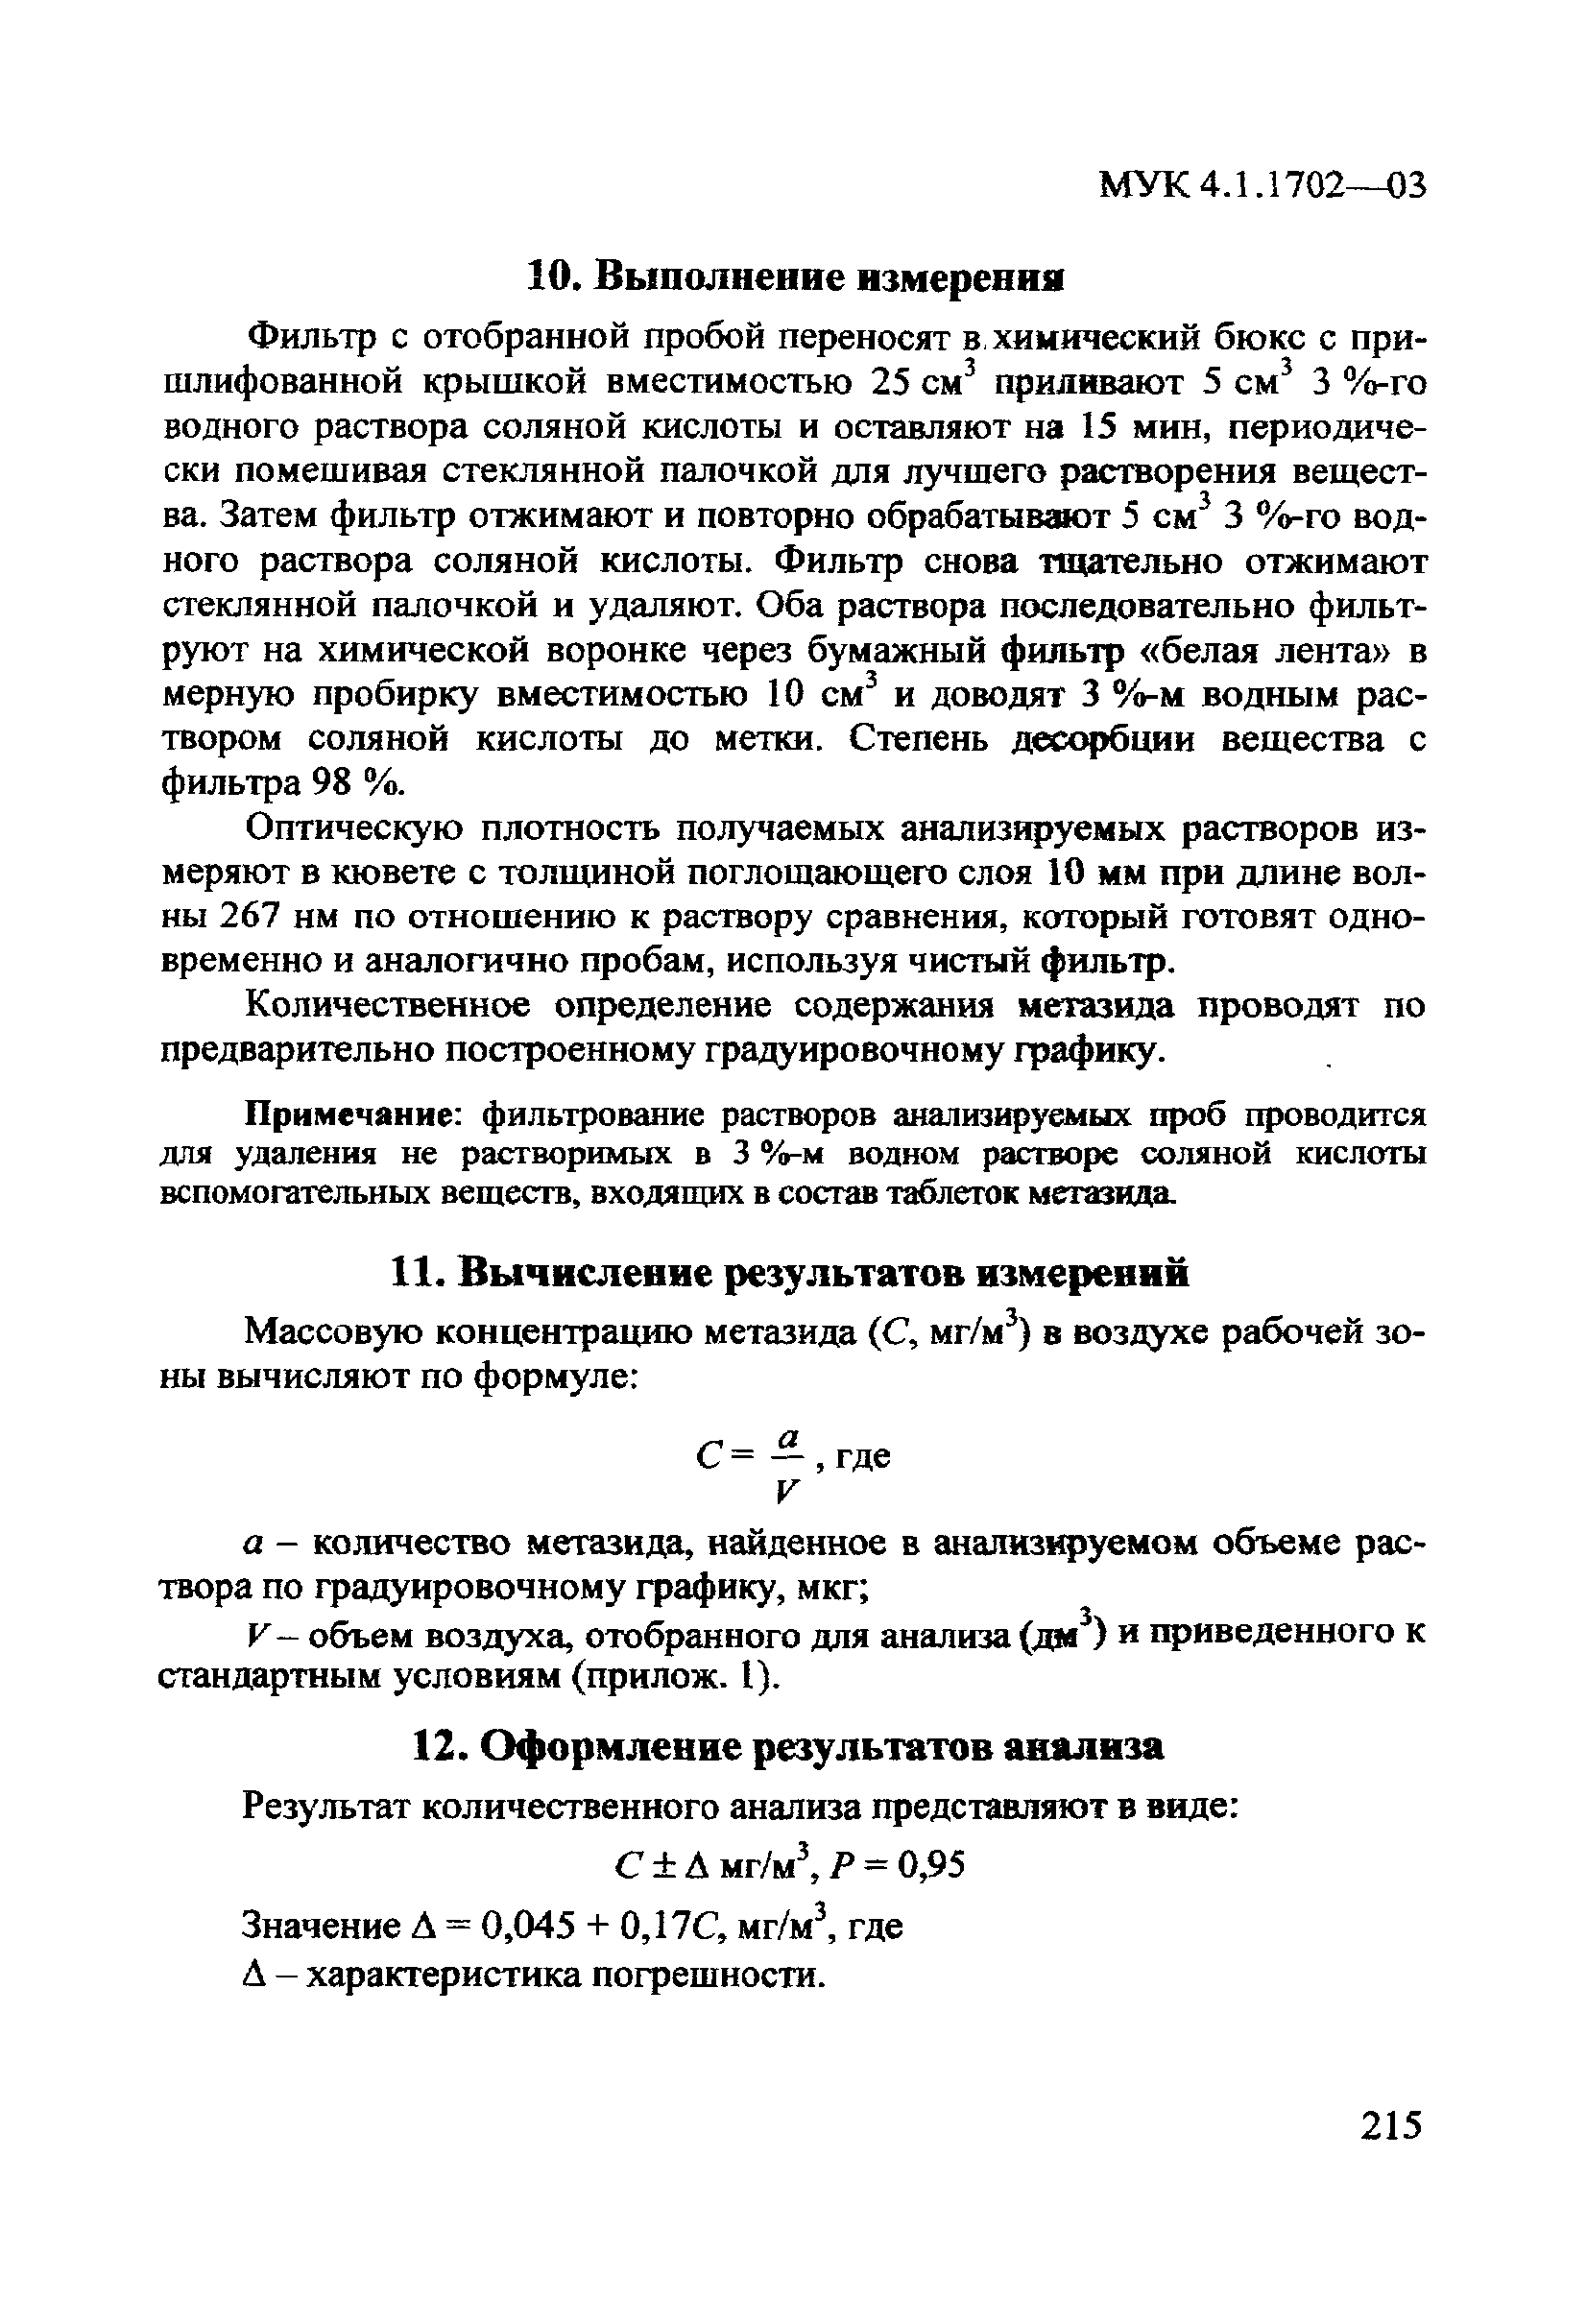 Скачать МУК 4.1.1702-03 Спектрофотометрическое измерение массовых .